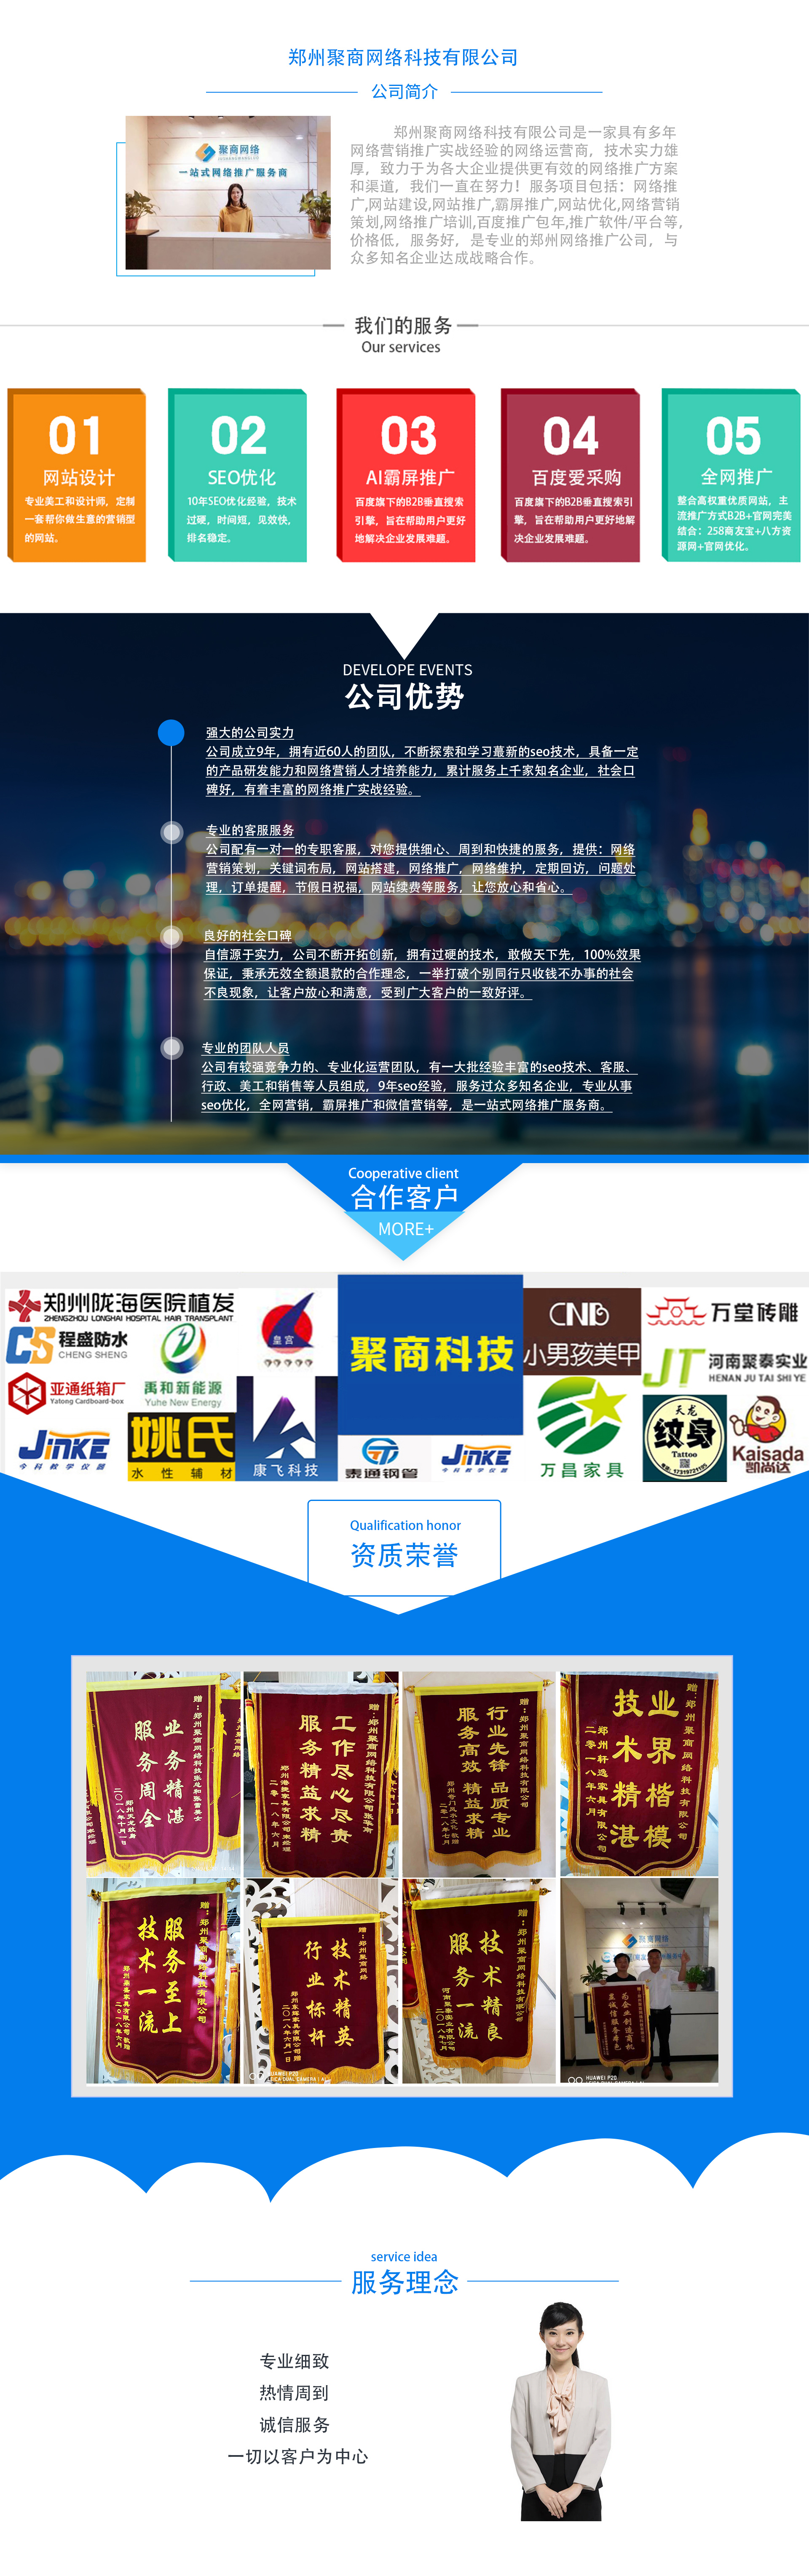 鄭州企業網站seo